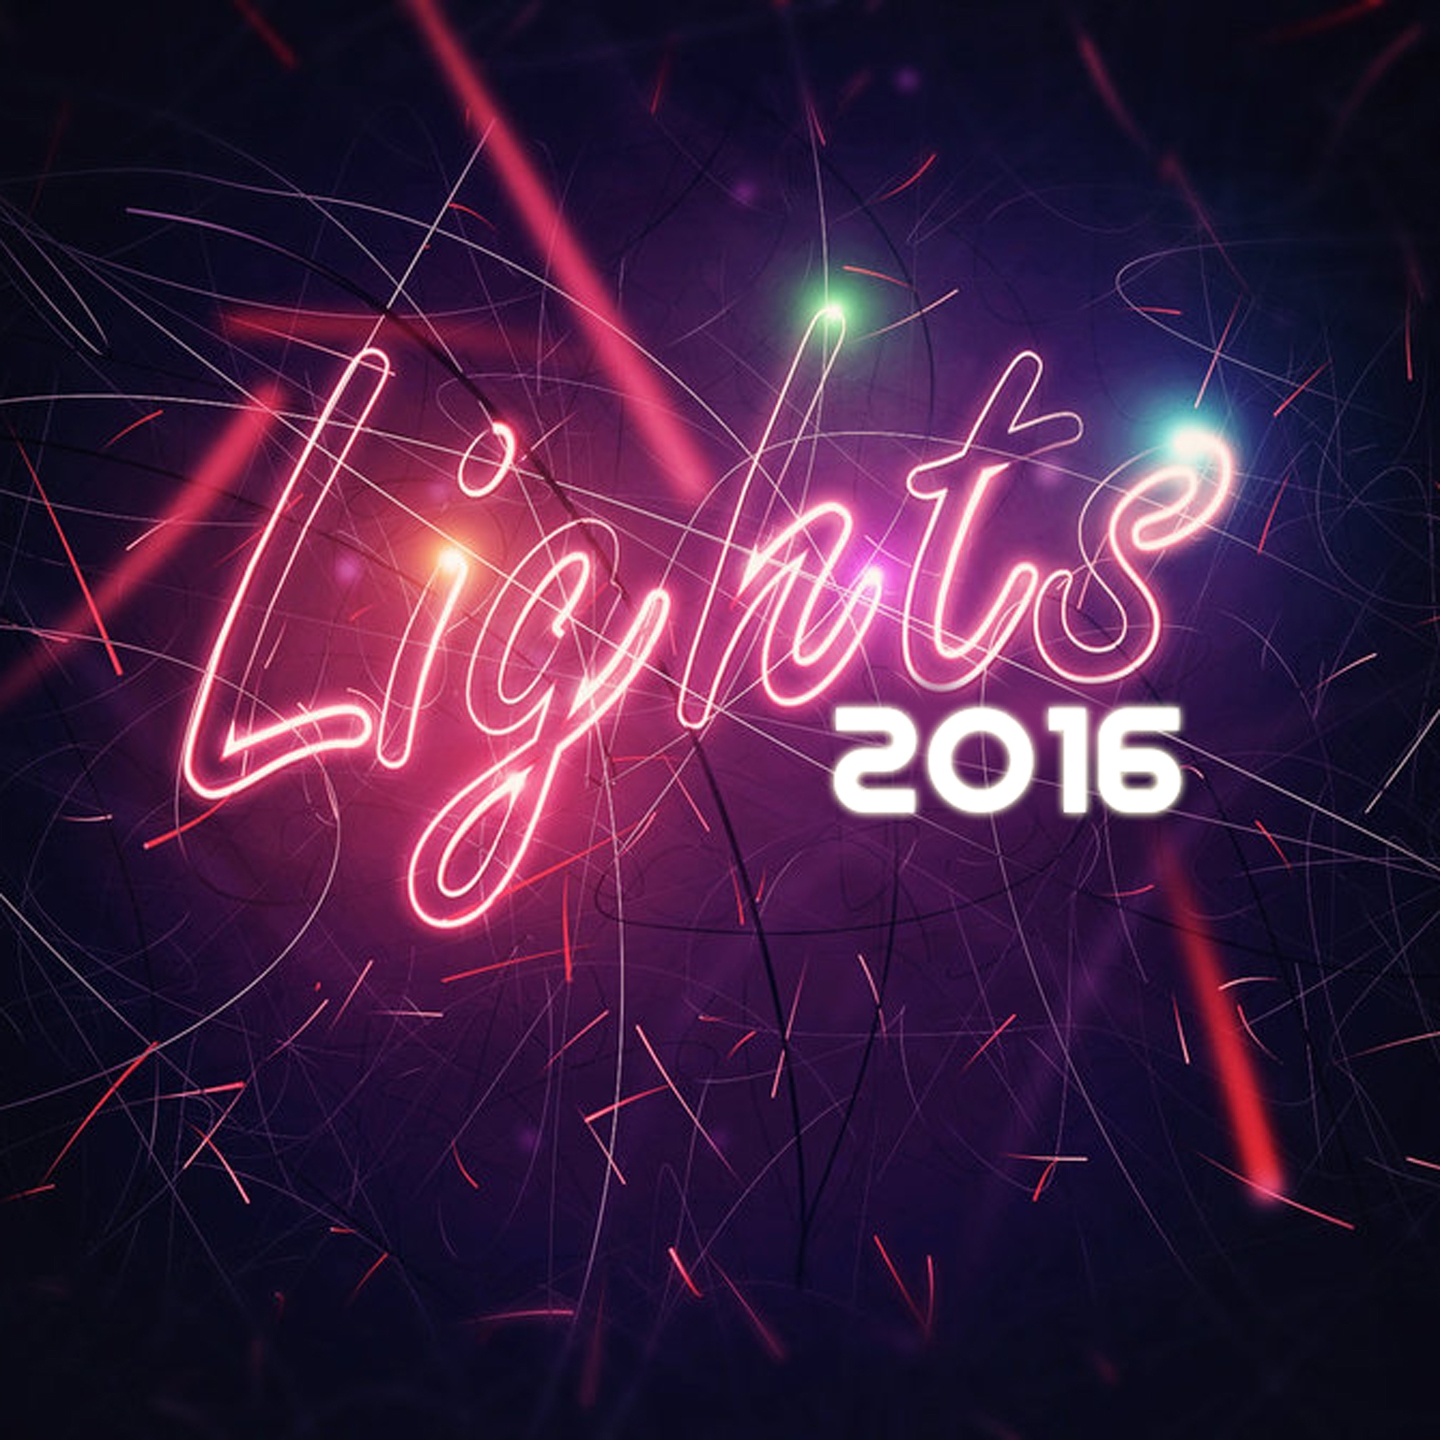 Lights 2016